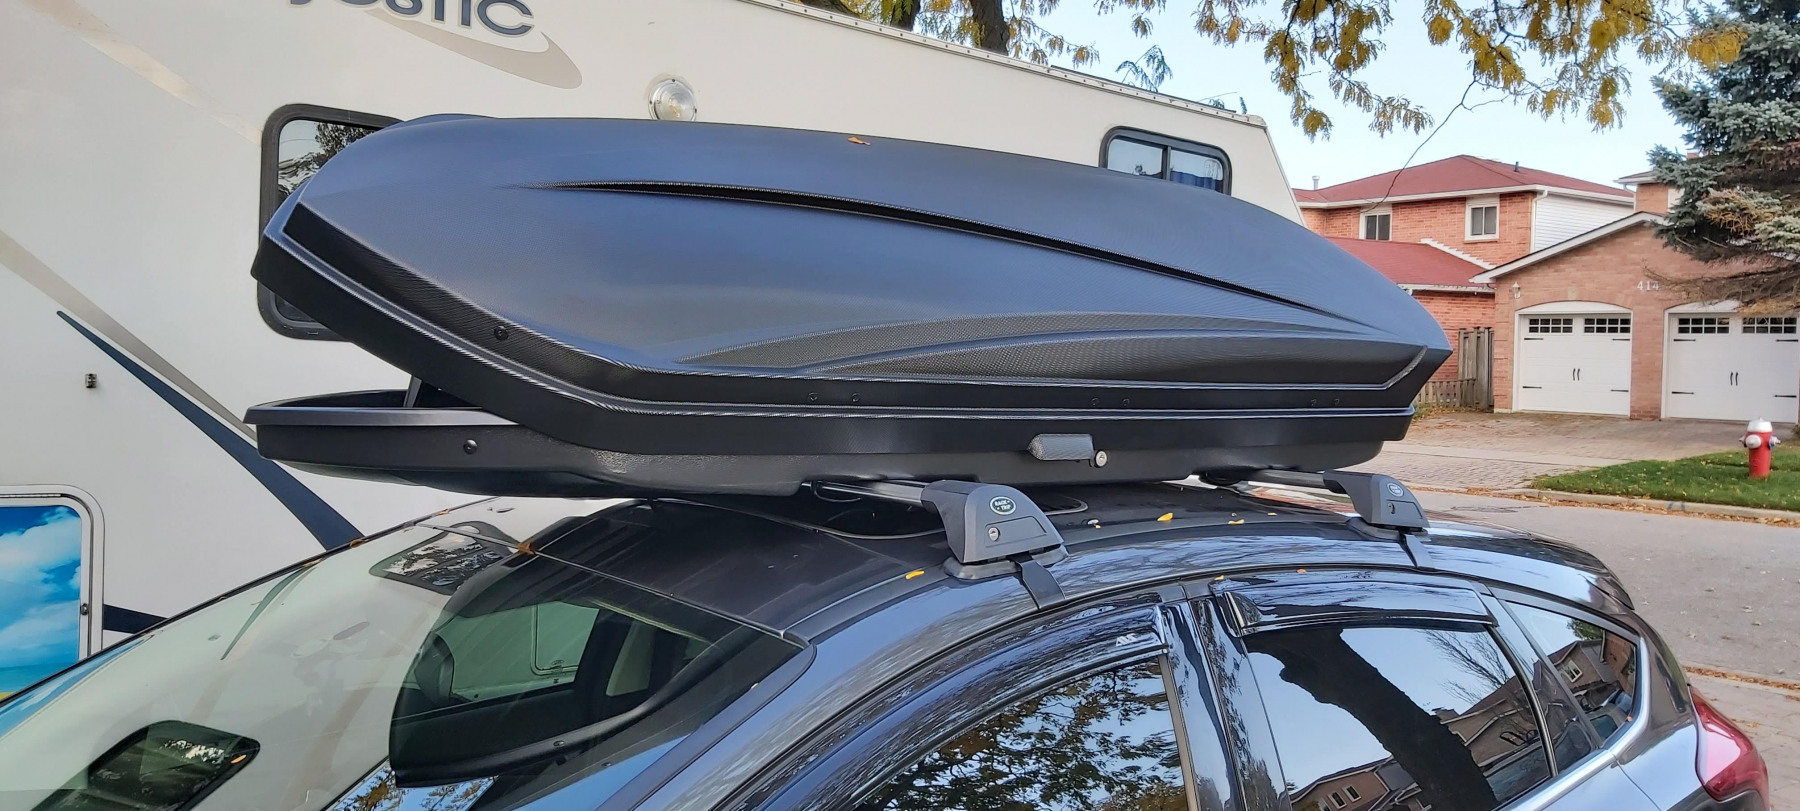 Roof Rack For 2017 Ford Focus Hatchback